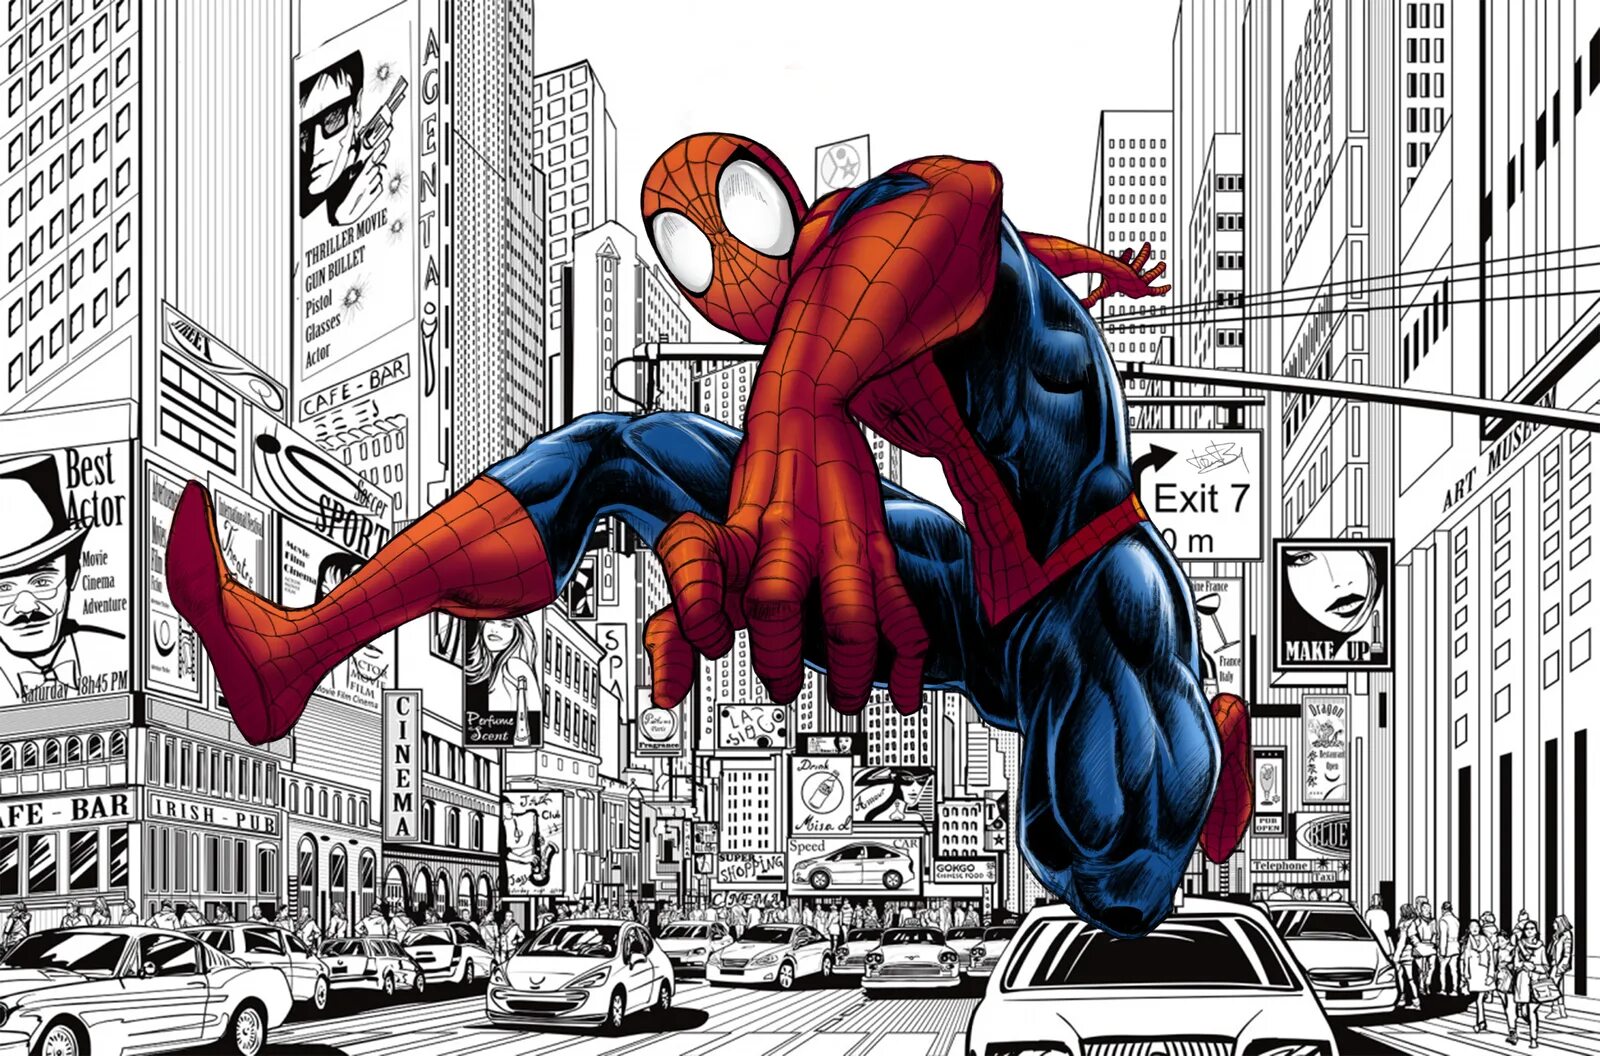 Картинки комиксы. Spider man комикс. Комиксы Марвел Spider man. Спайдер Мэн комикс. Человек паук из комиксов Марвел.